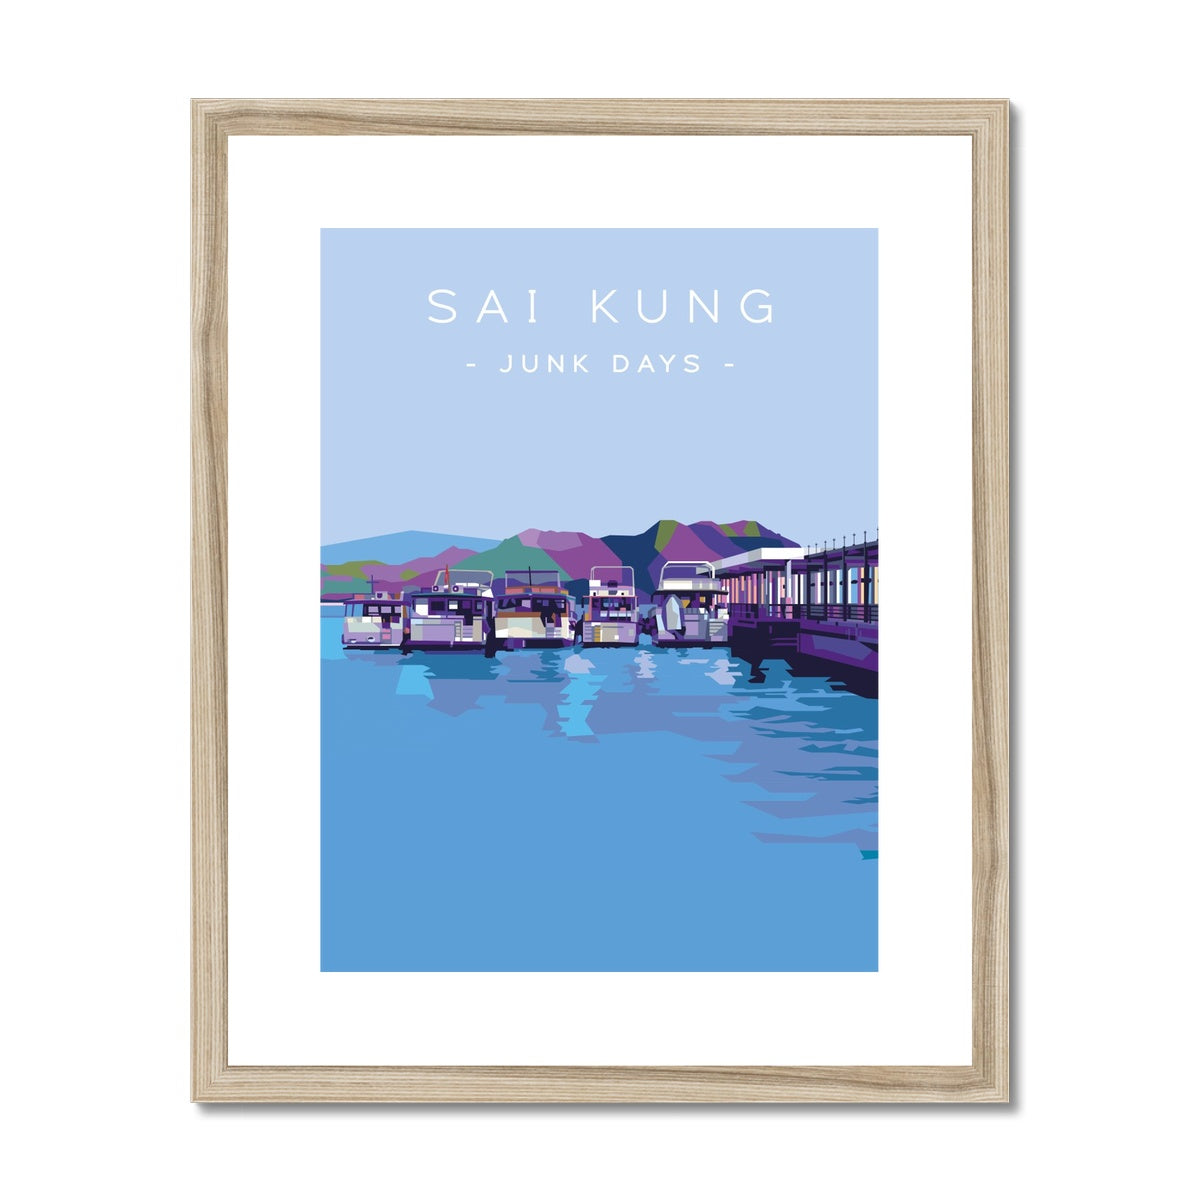 Hong Kong Travel - Sai Kung Junk Days Framed & Mounted Print